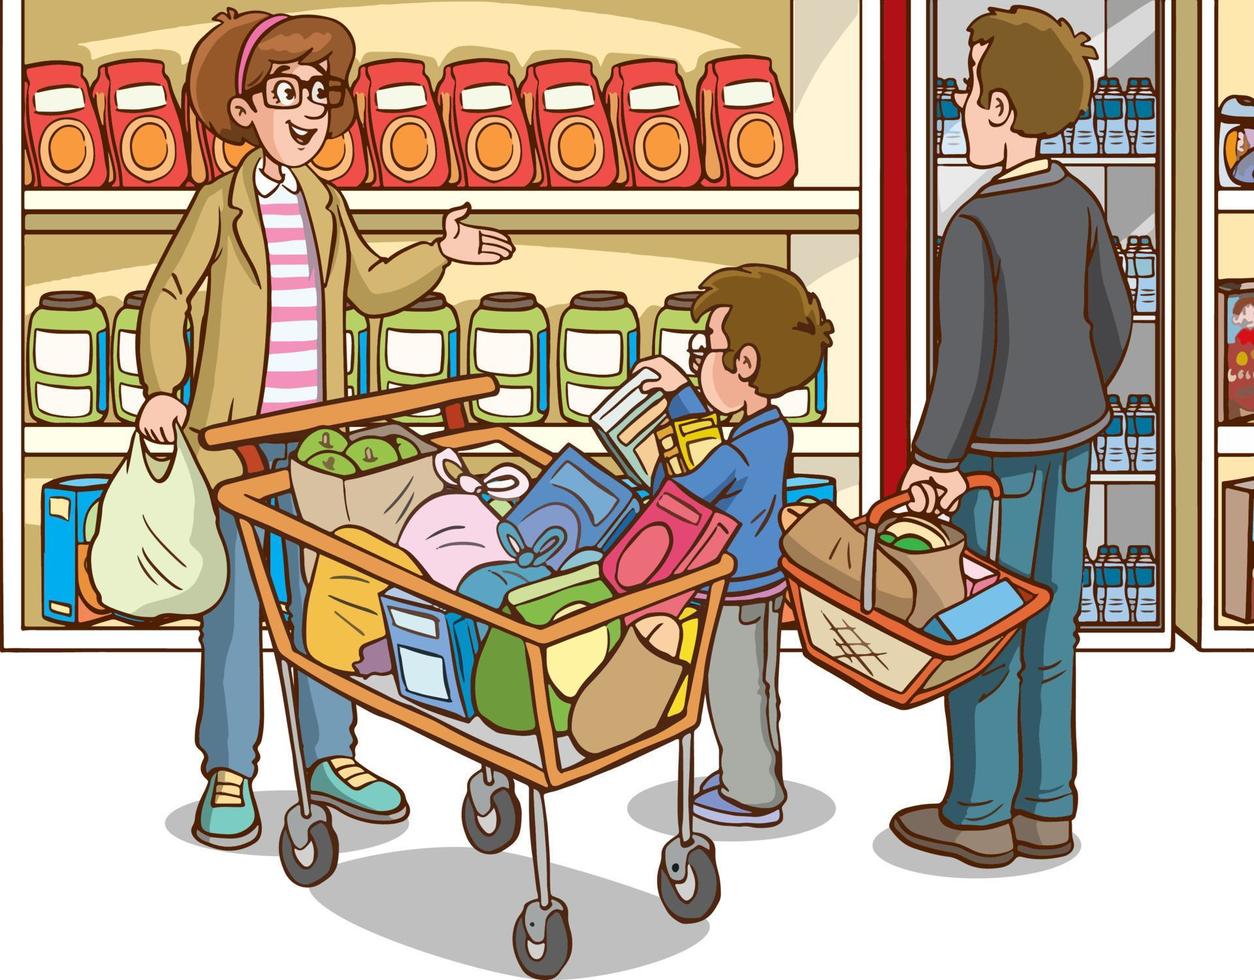 Einkaufen Kinder und Familie Karikatur Vektor Illustration